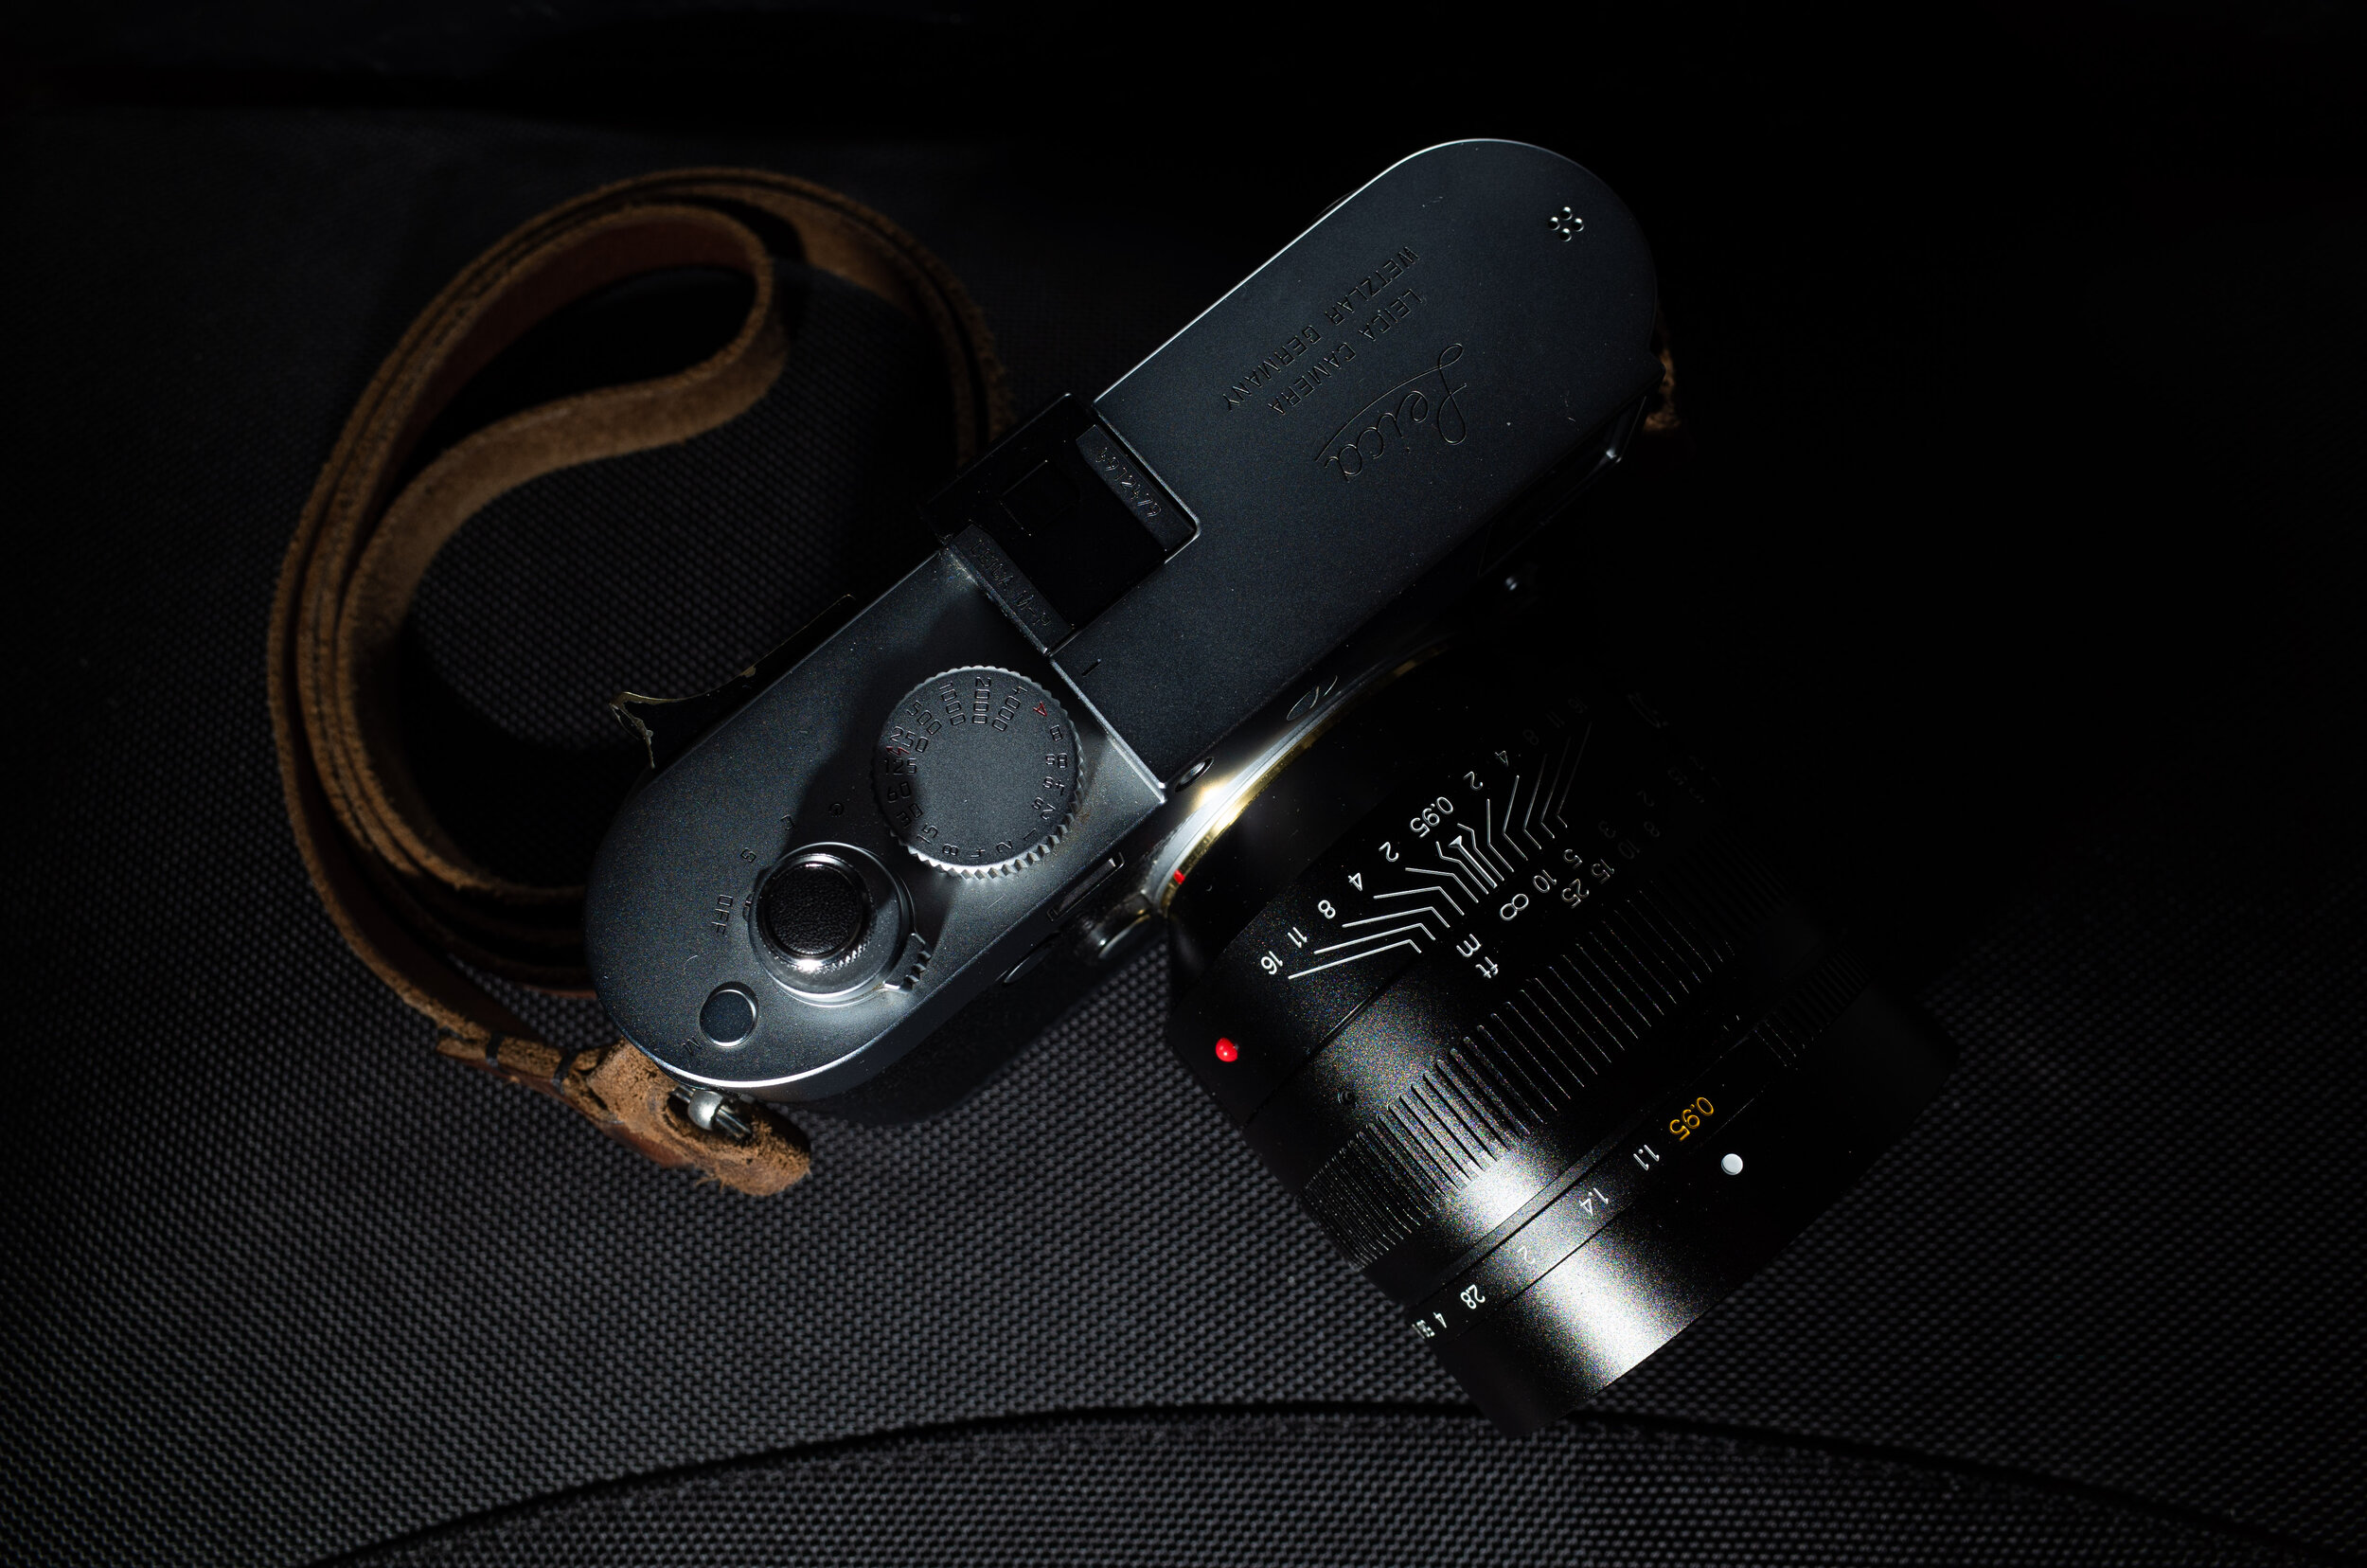 TTArtisan 50mm 0.95 — Focus shift: a street photography blog